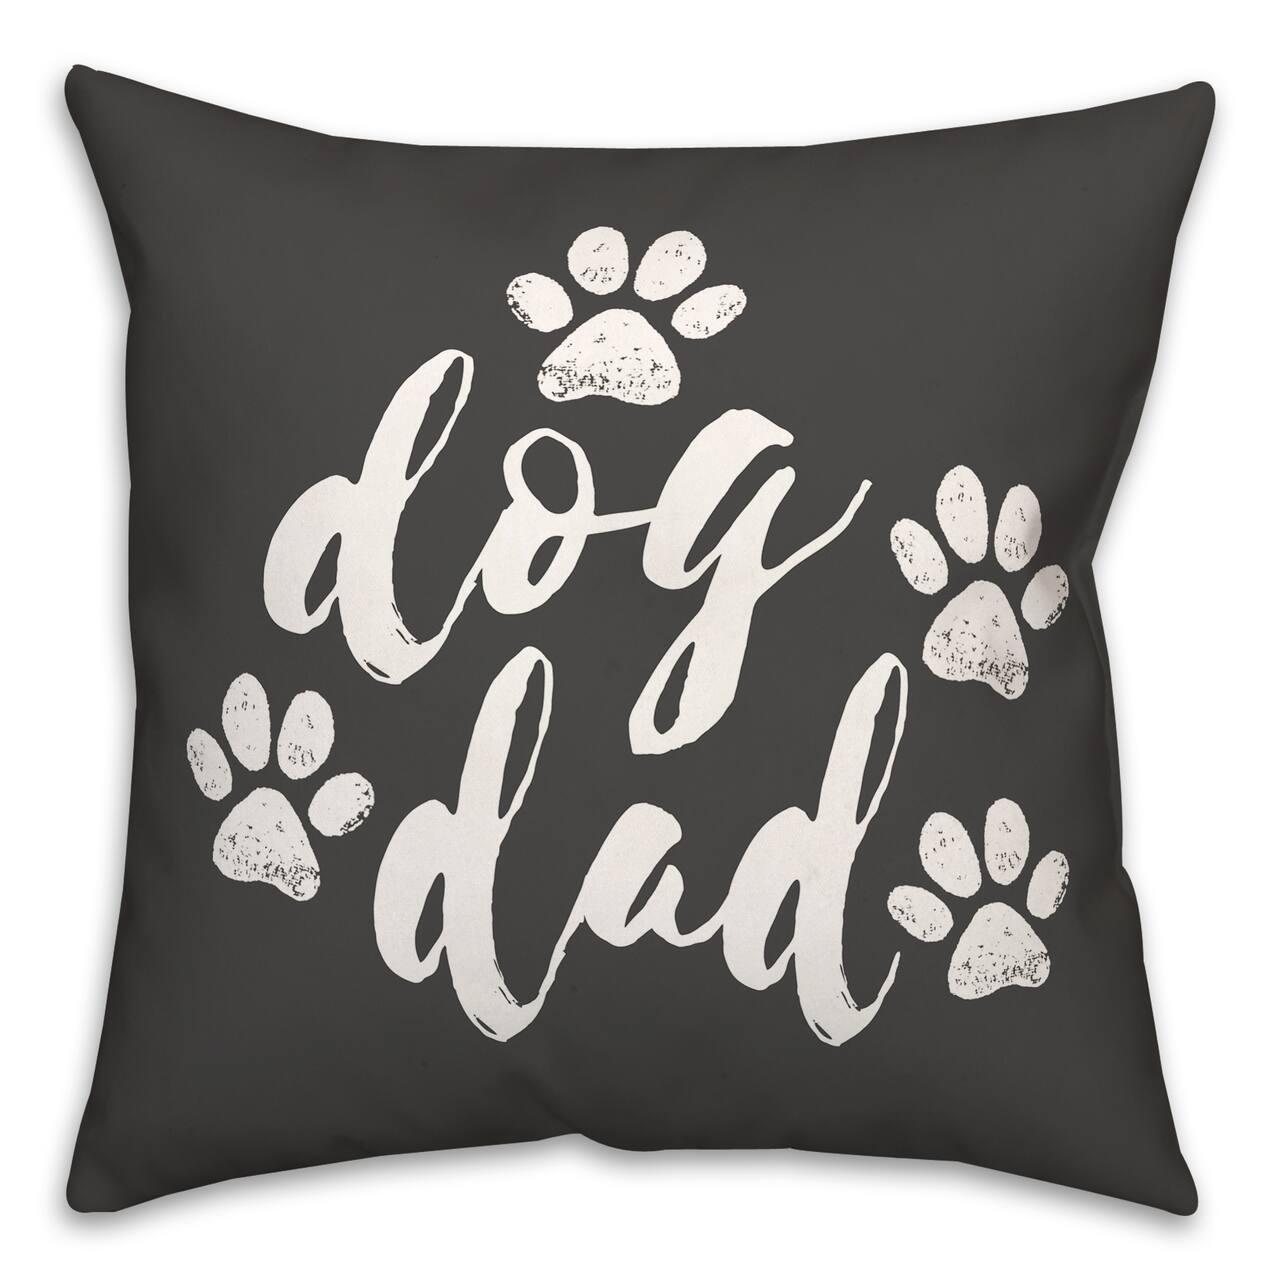 Dog Dad Paws Throw Pillow